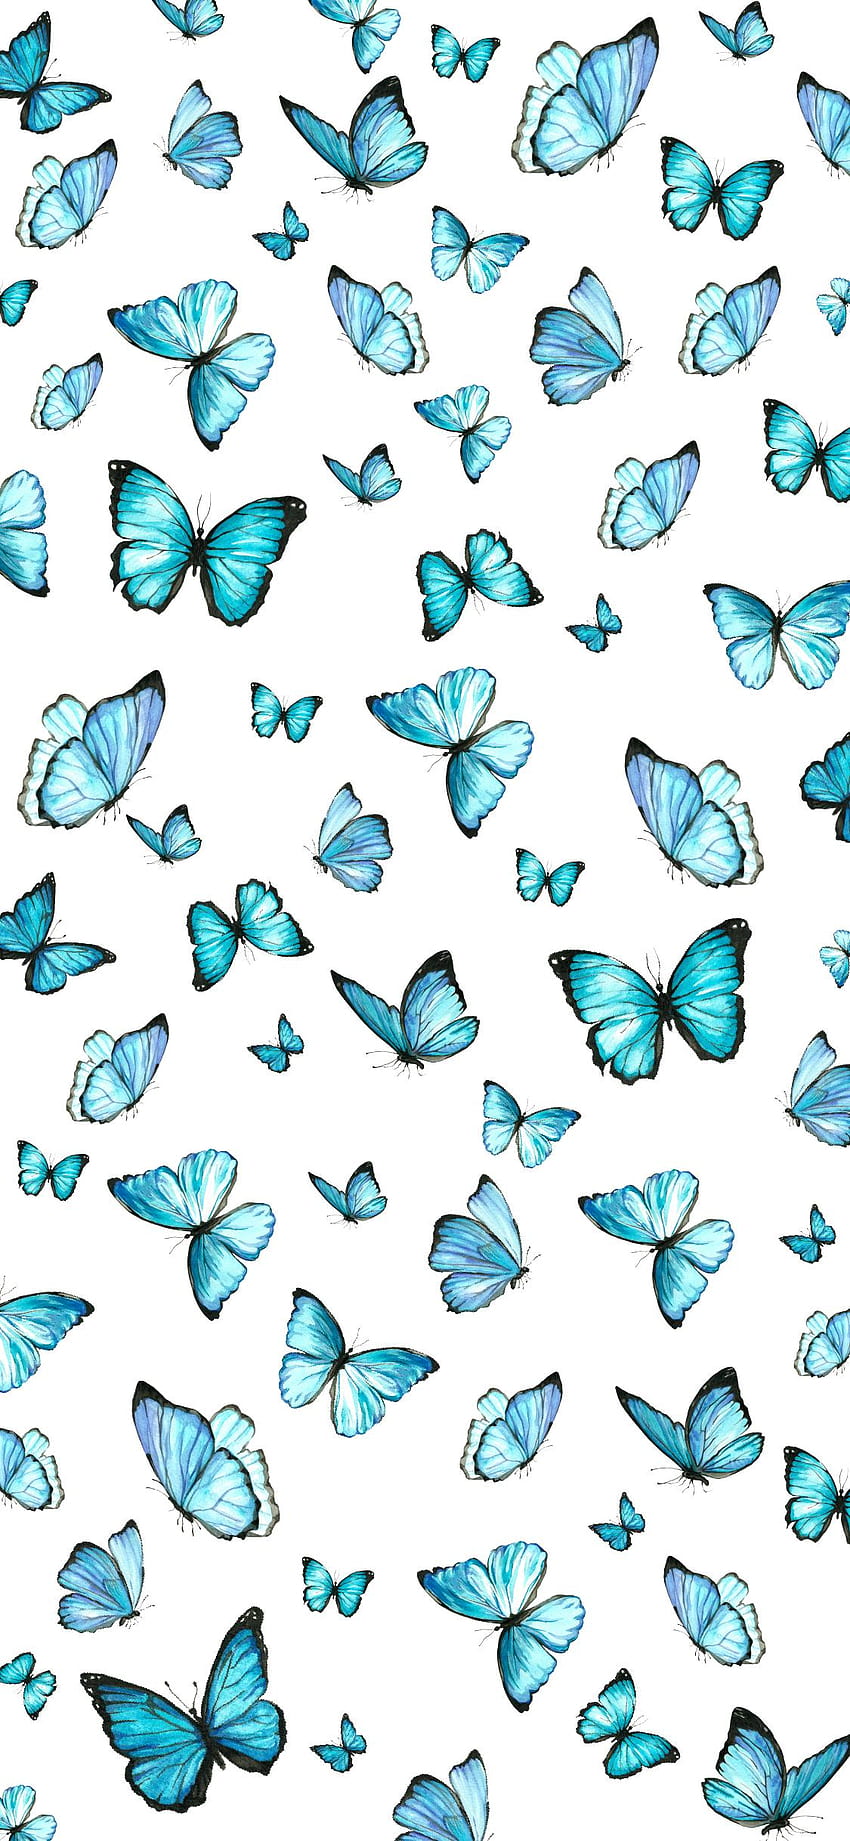 Free Royal Blue Butterfly Wallpaper  JPG  Templatenet